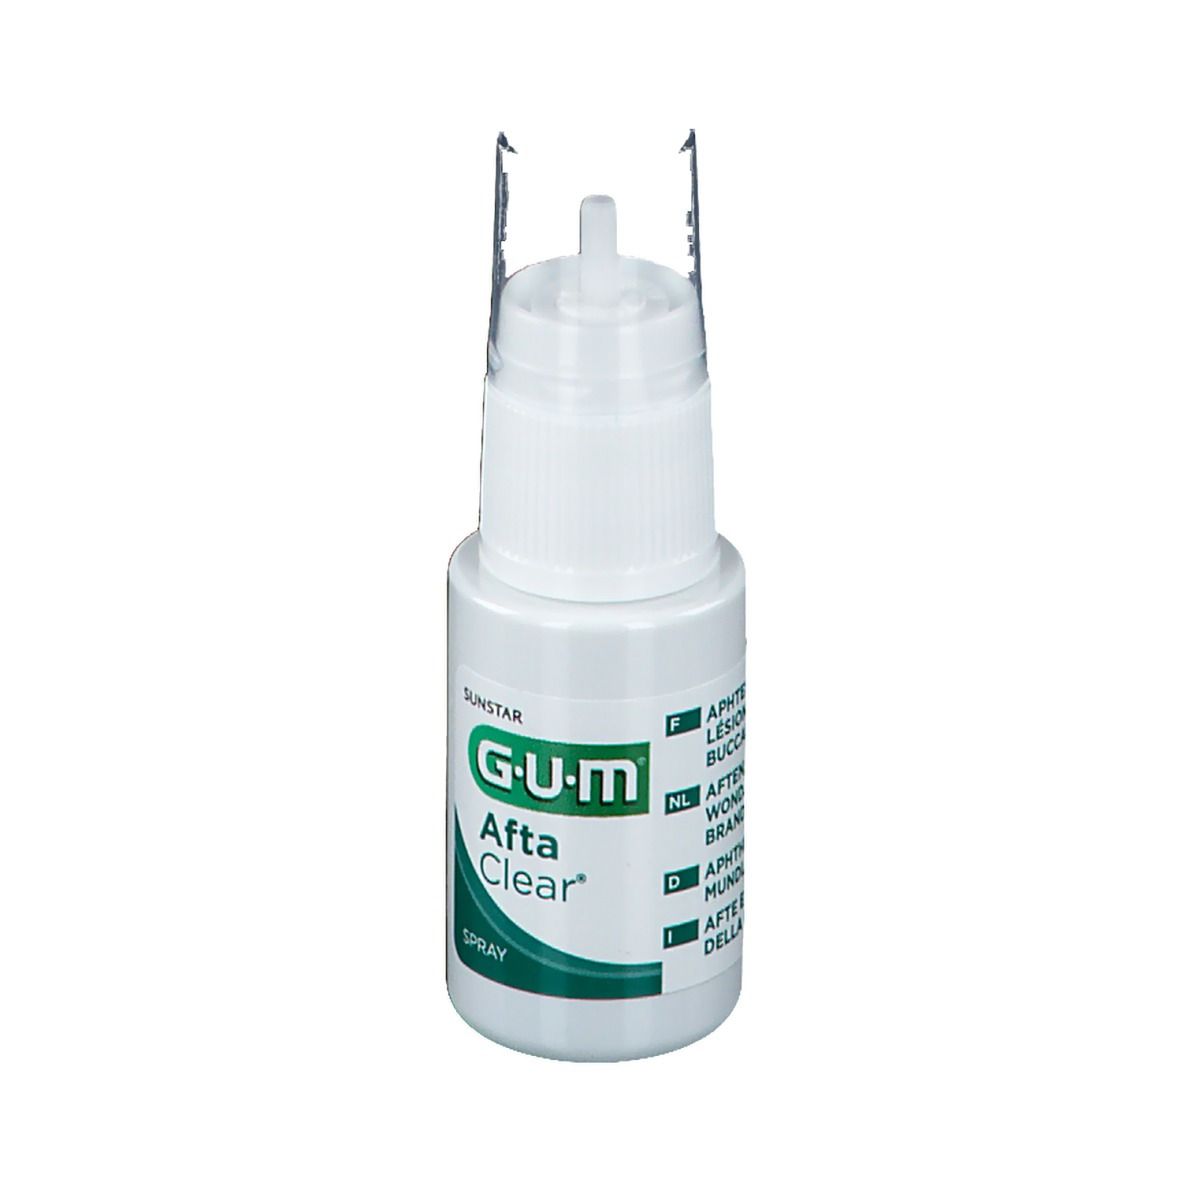 GUM® Afta Clear Spray